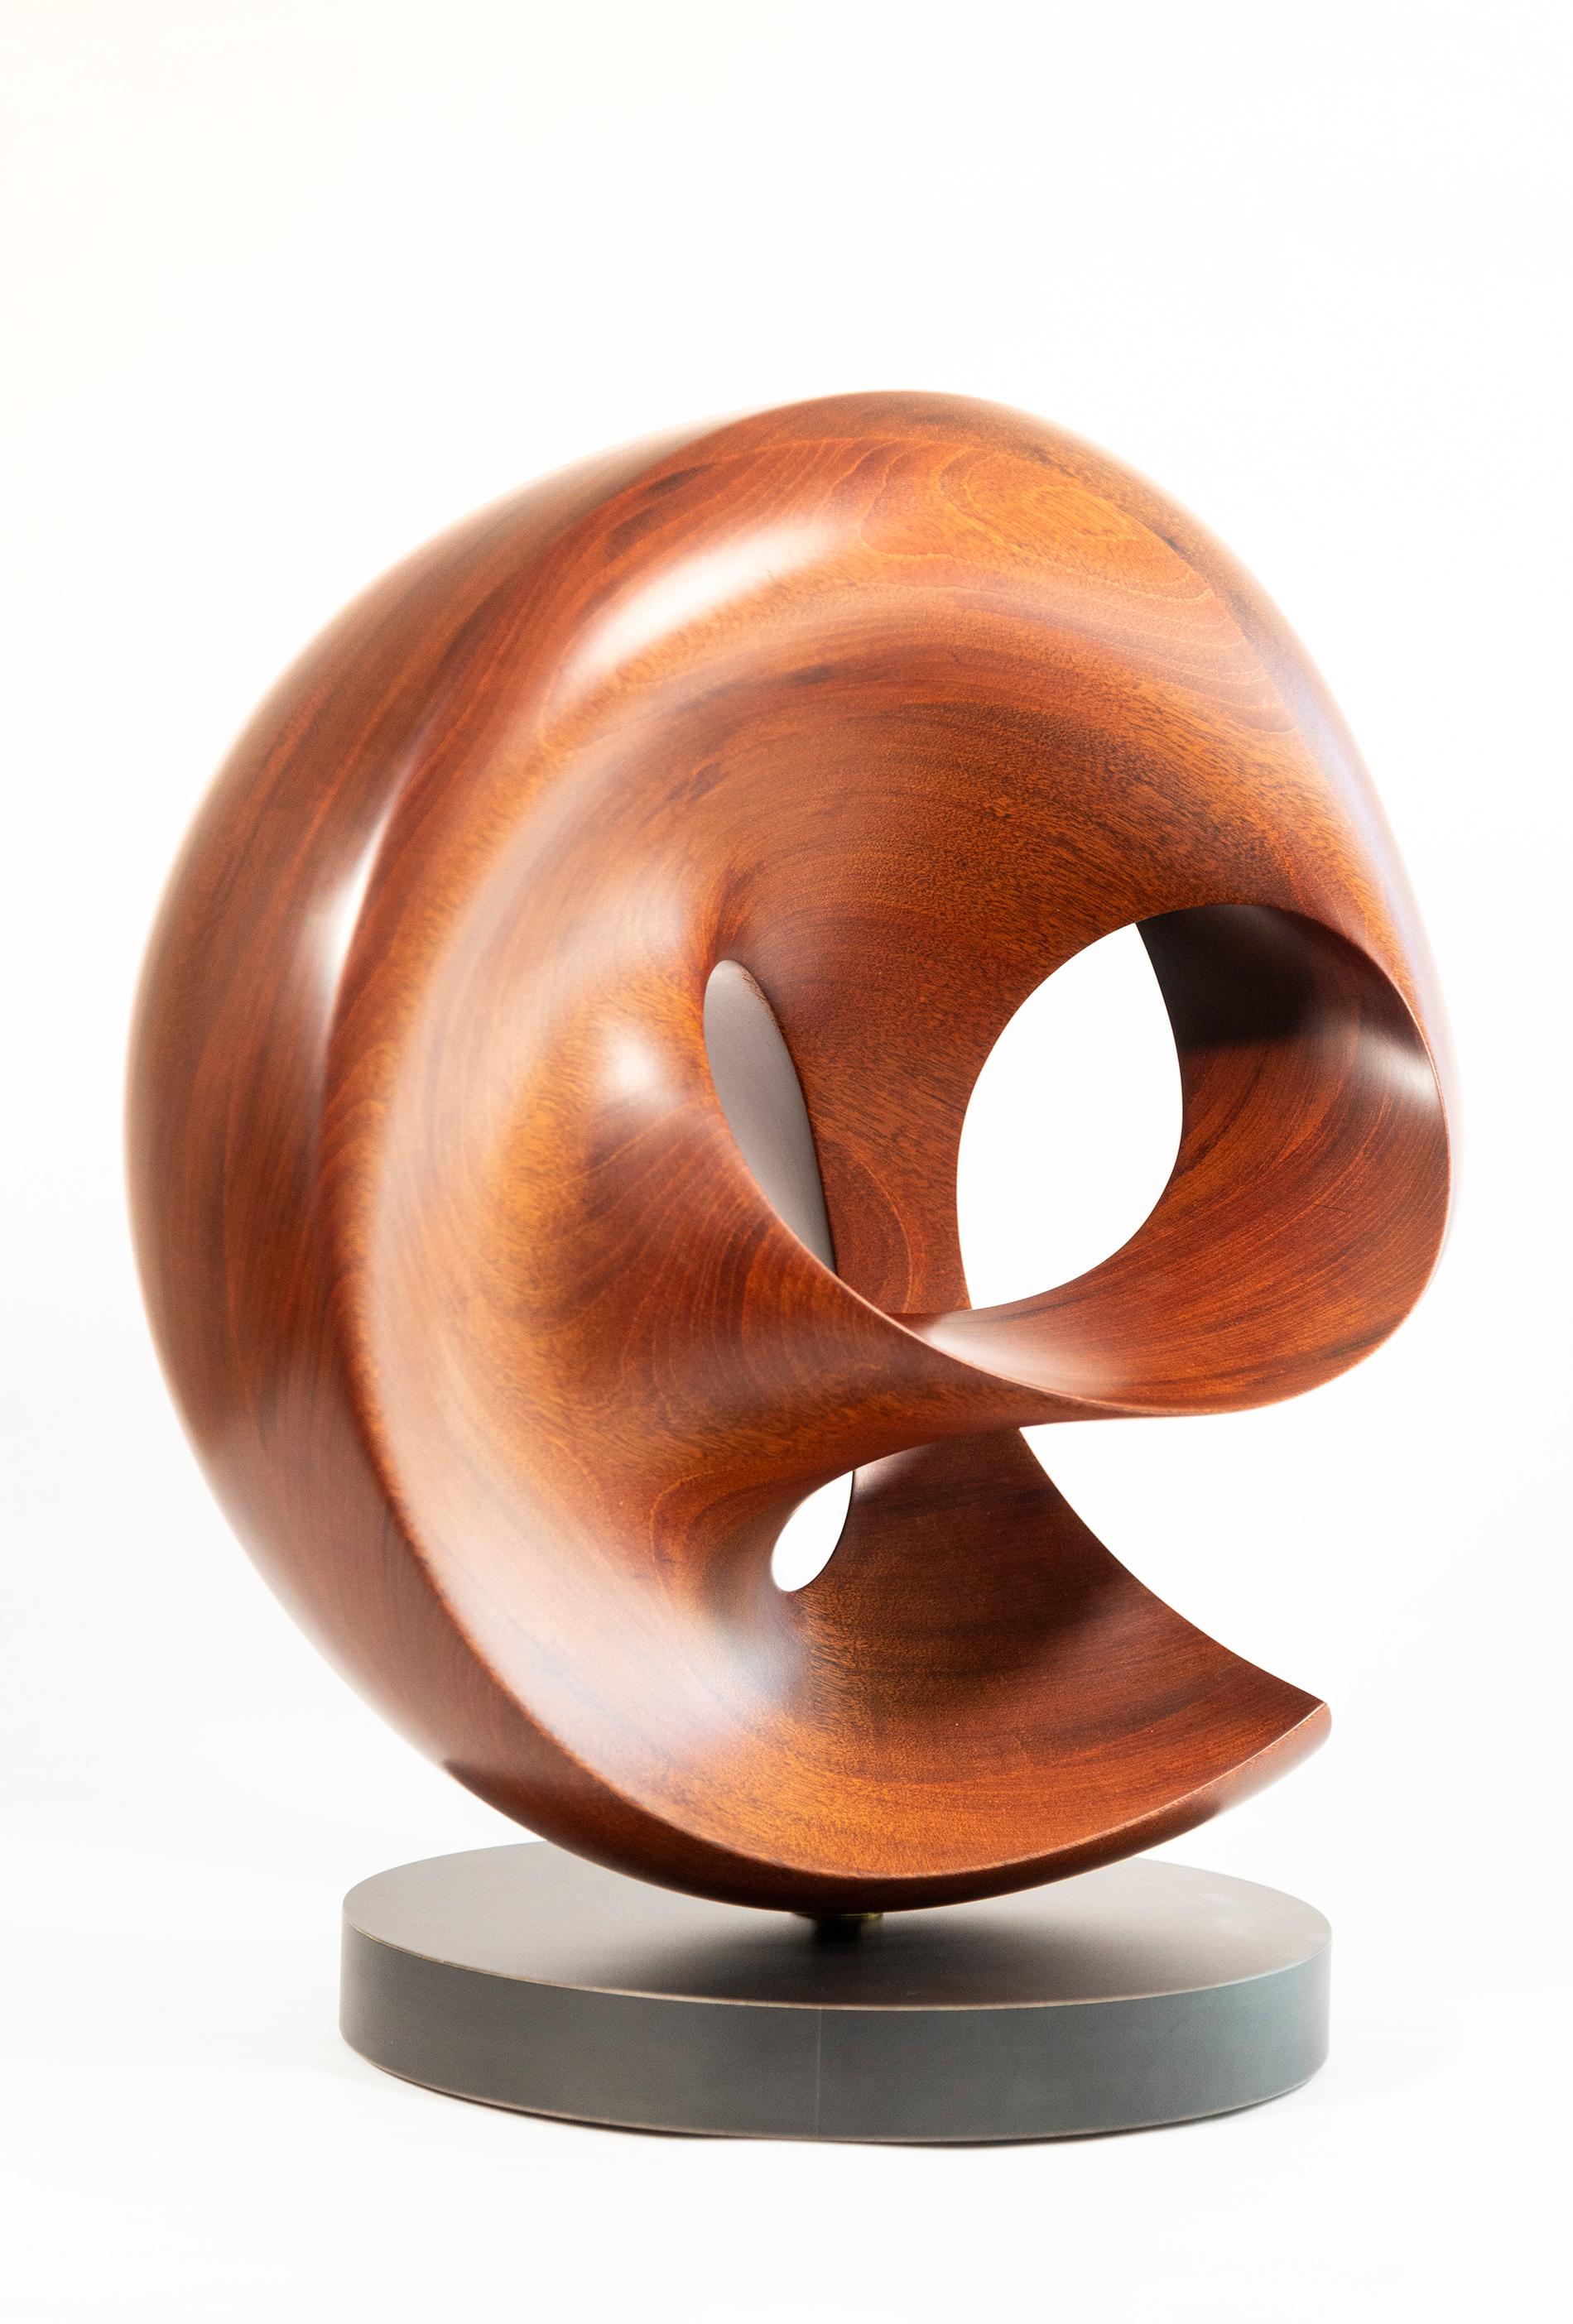 Fanfare - sculpture lisse, polie, abstraite, contemporaine, sculptée en acajou - Abstrait Sculpture par David Chamberlain